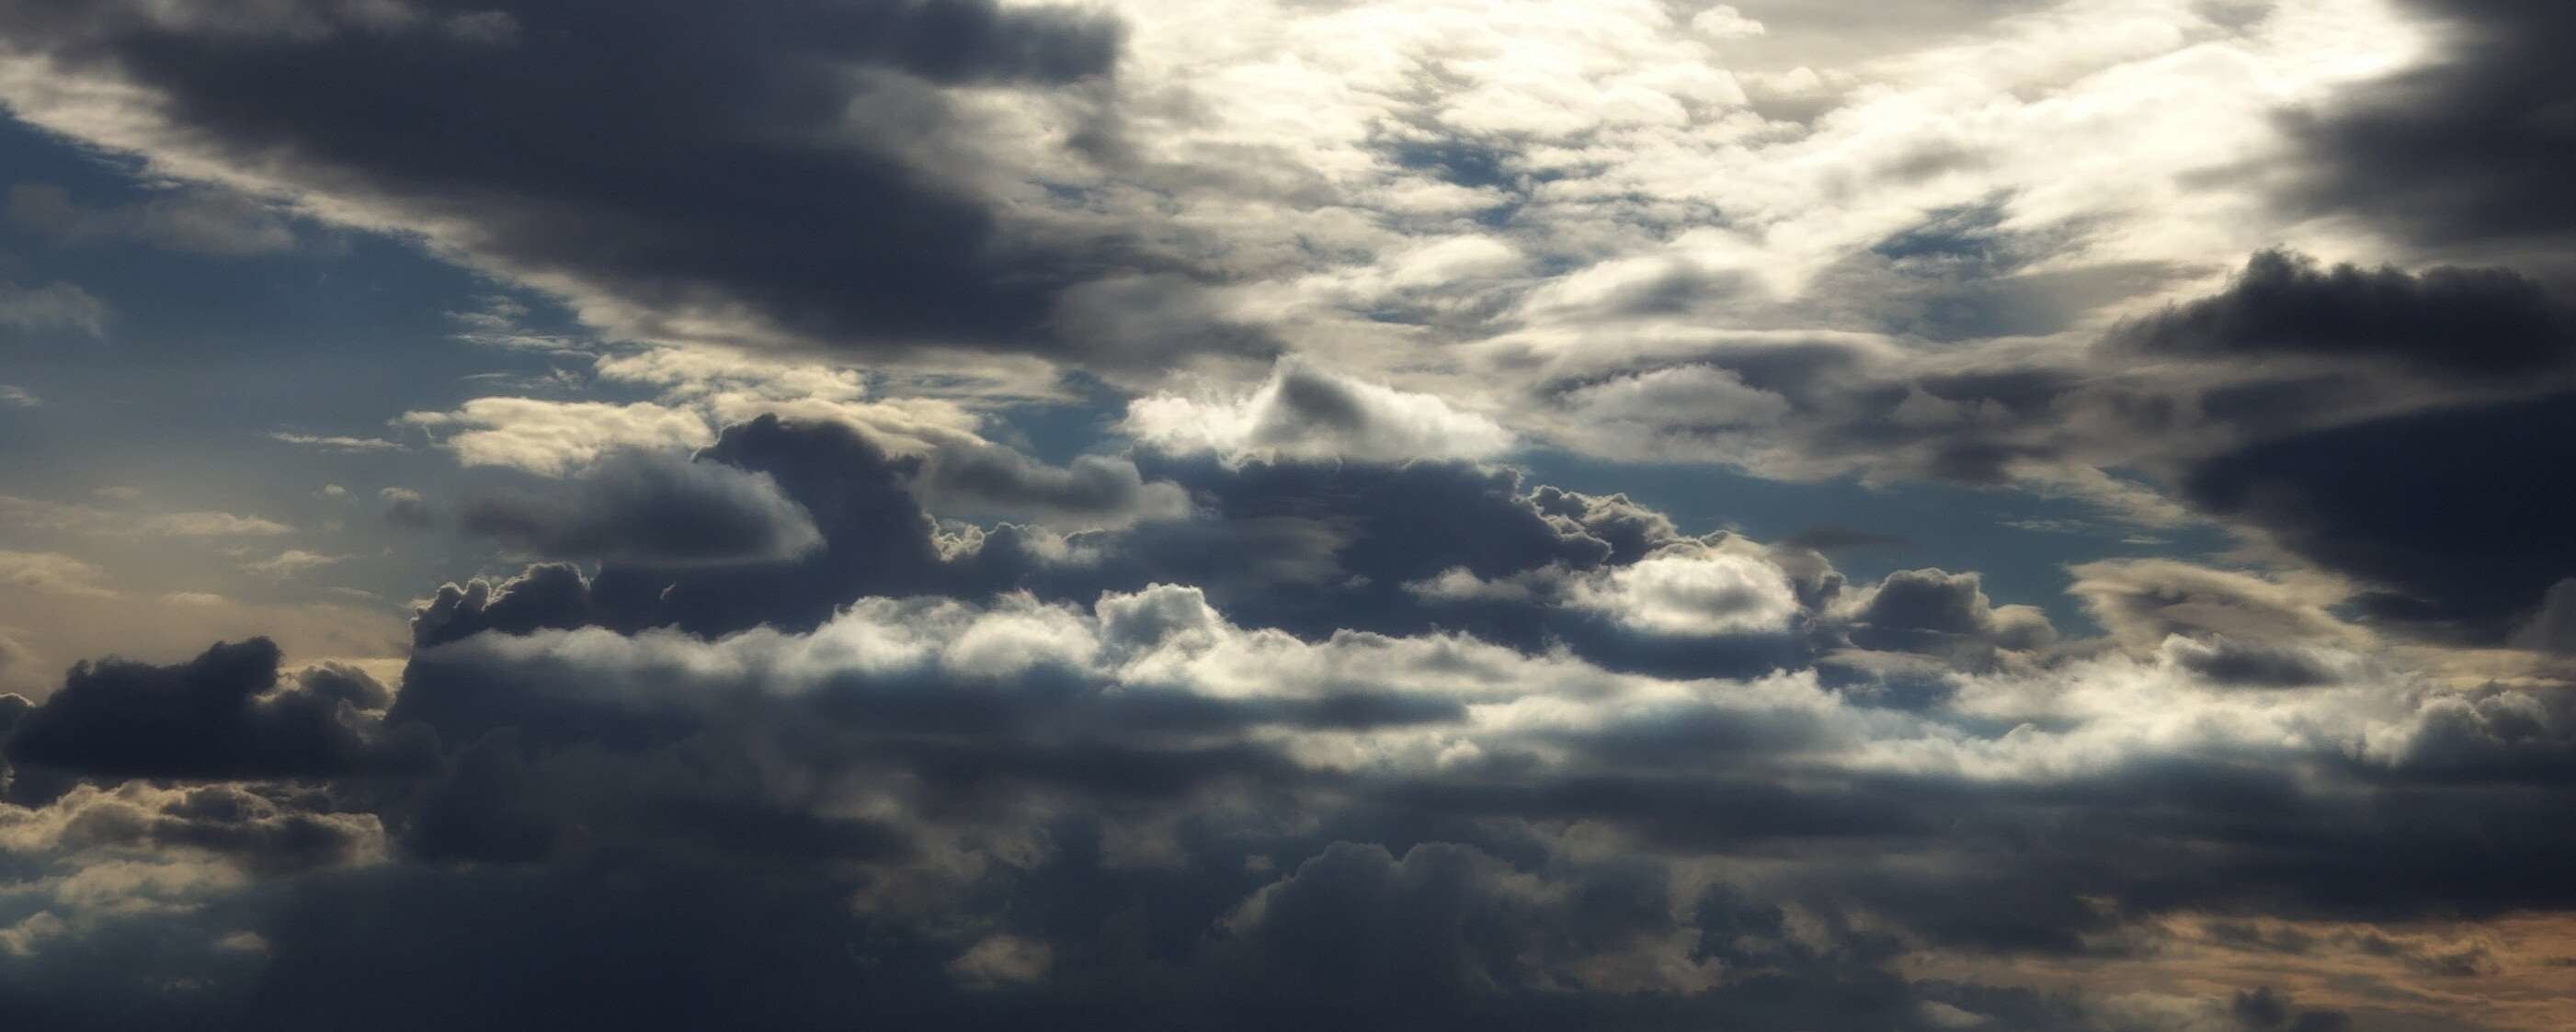 Gray Cloudy Sky: Sun illuminating the tops of clouds, Twilight, Cumulonimbus. 2810x1130 Dual Screen Wallpaper.